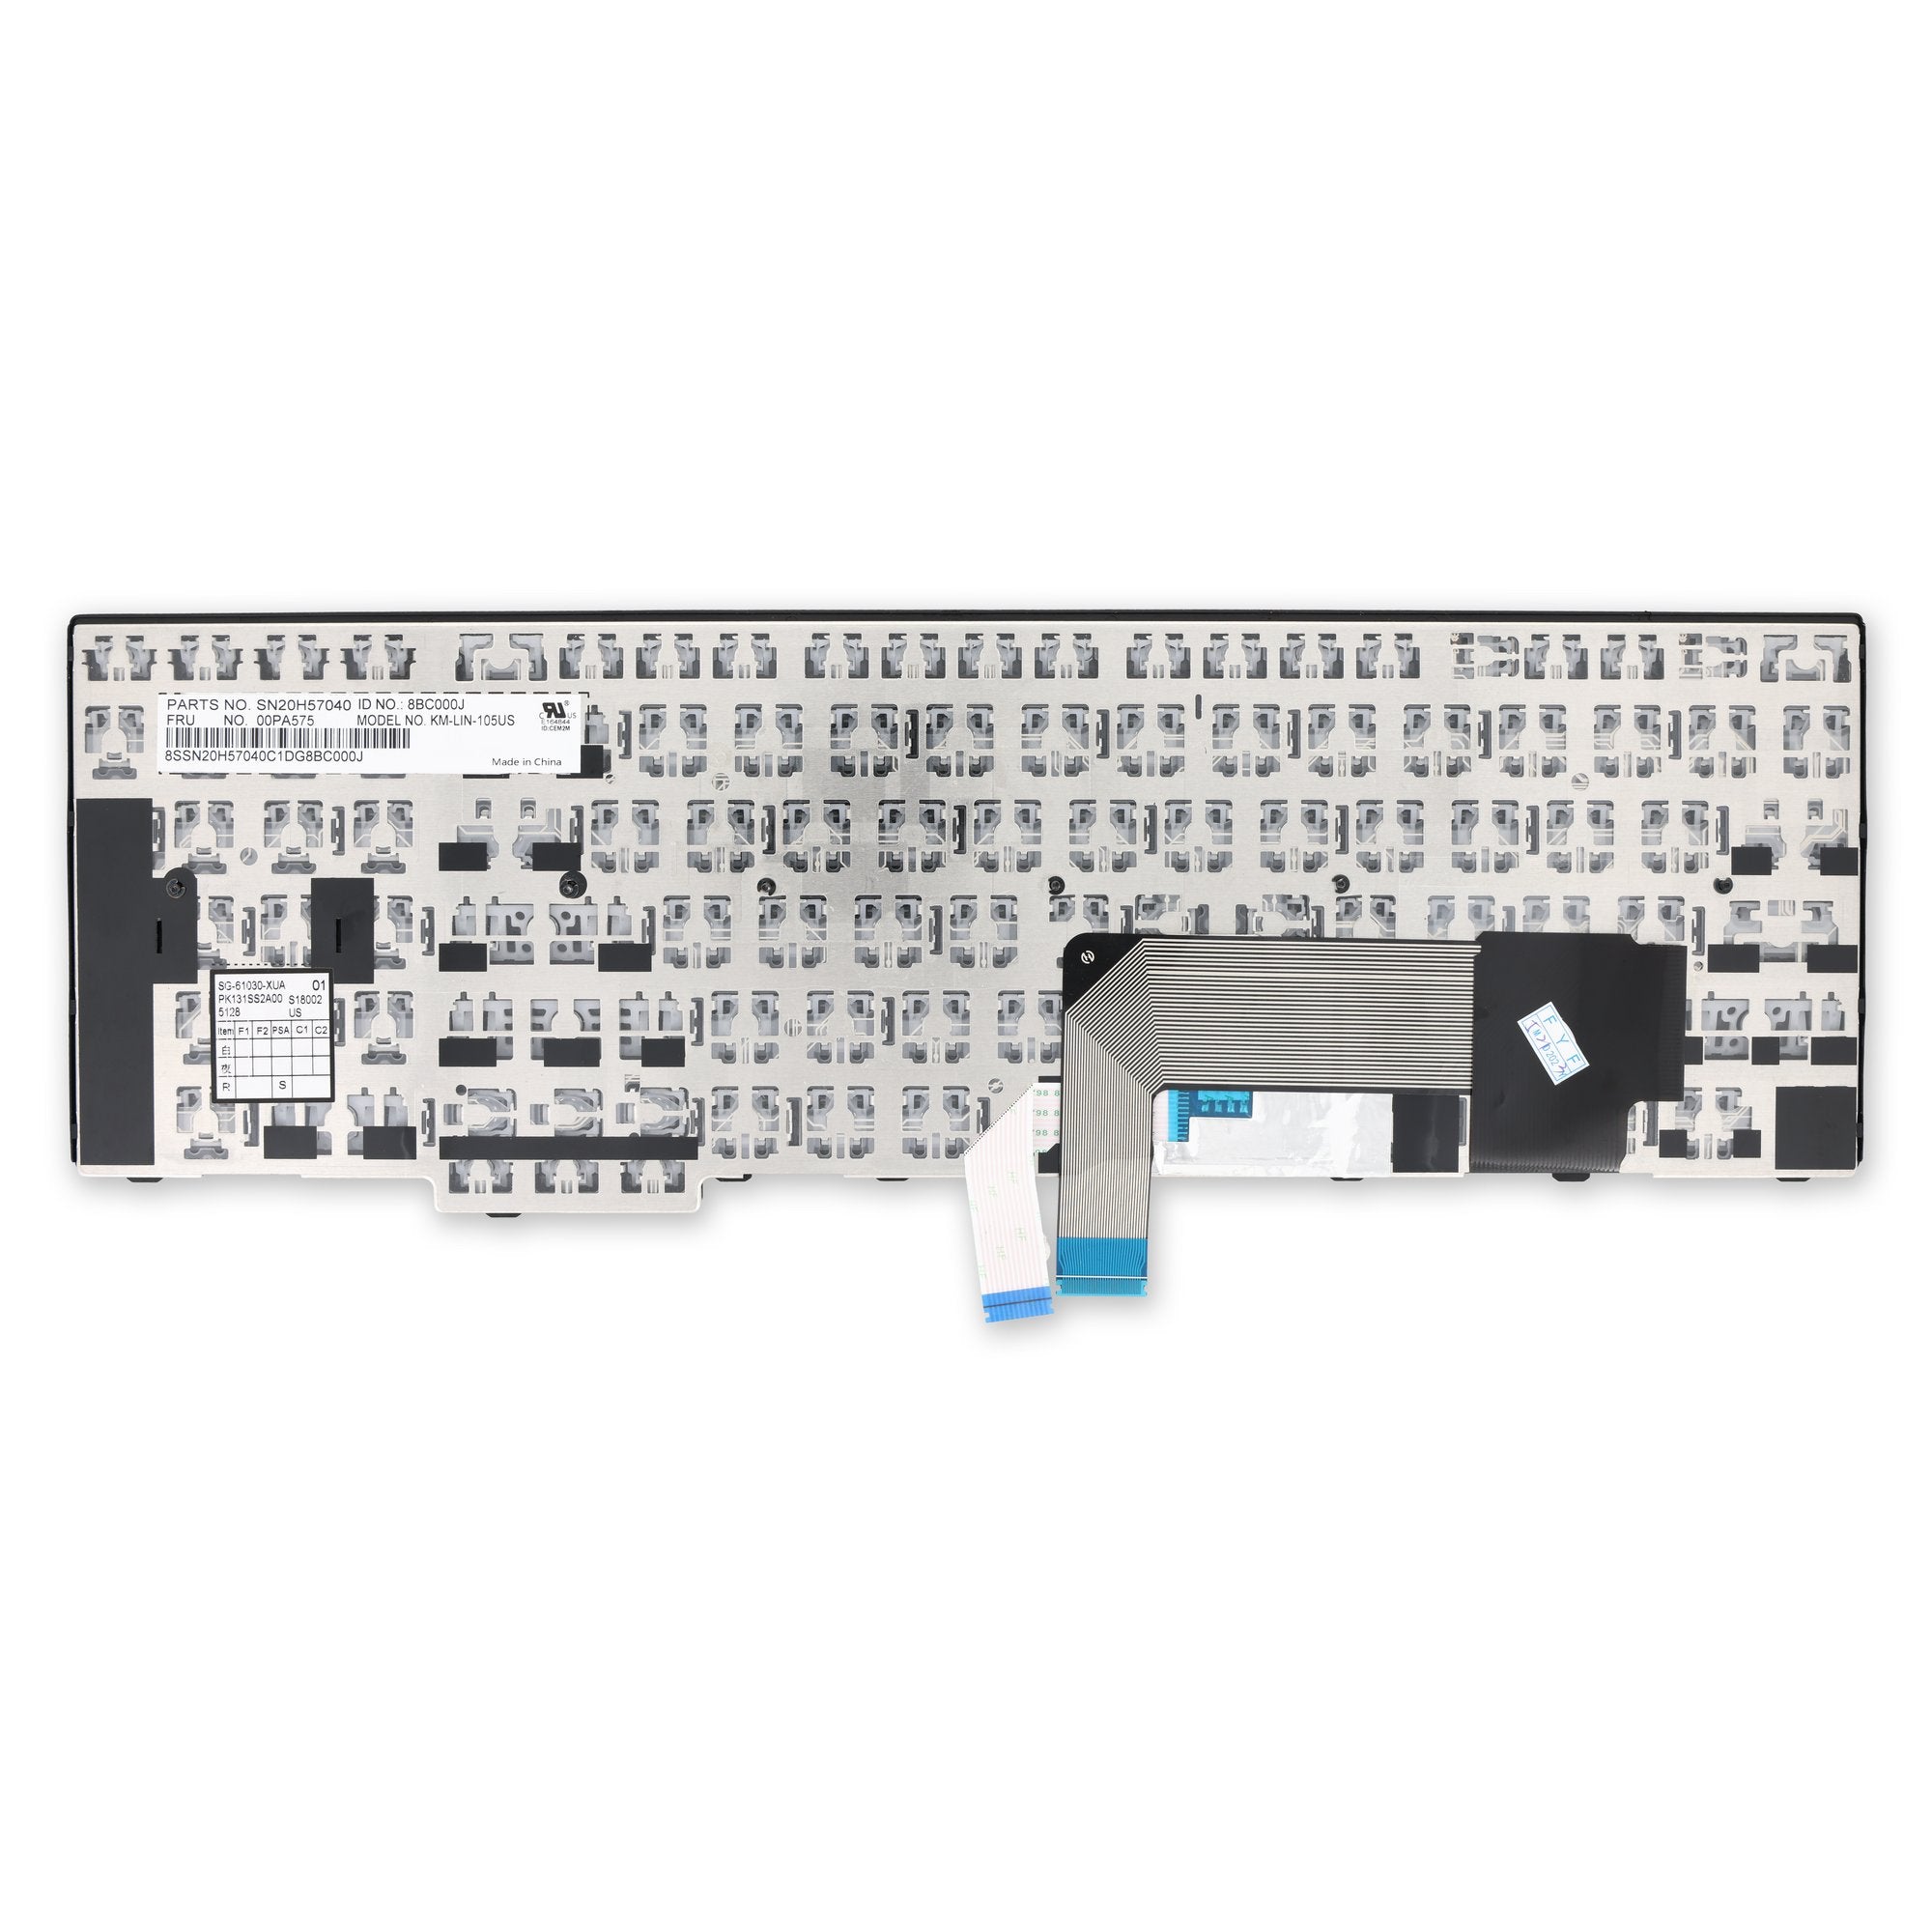 Lenovo ThinkPad Keyboard - 00PA575 New